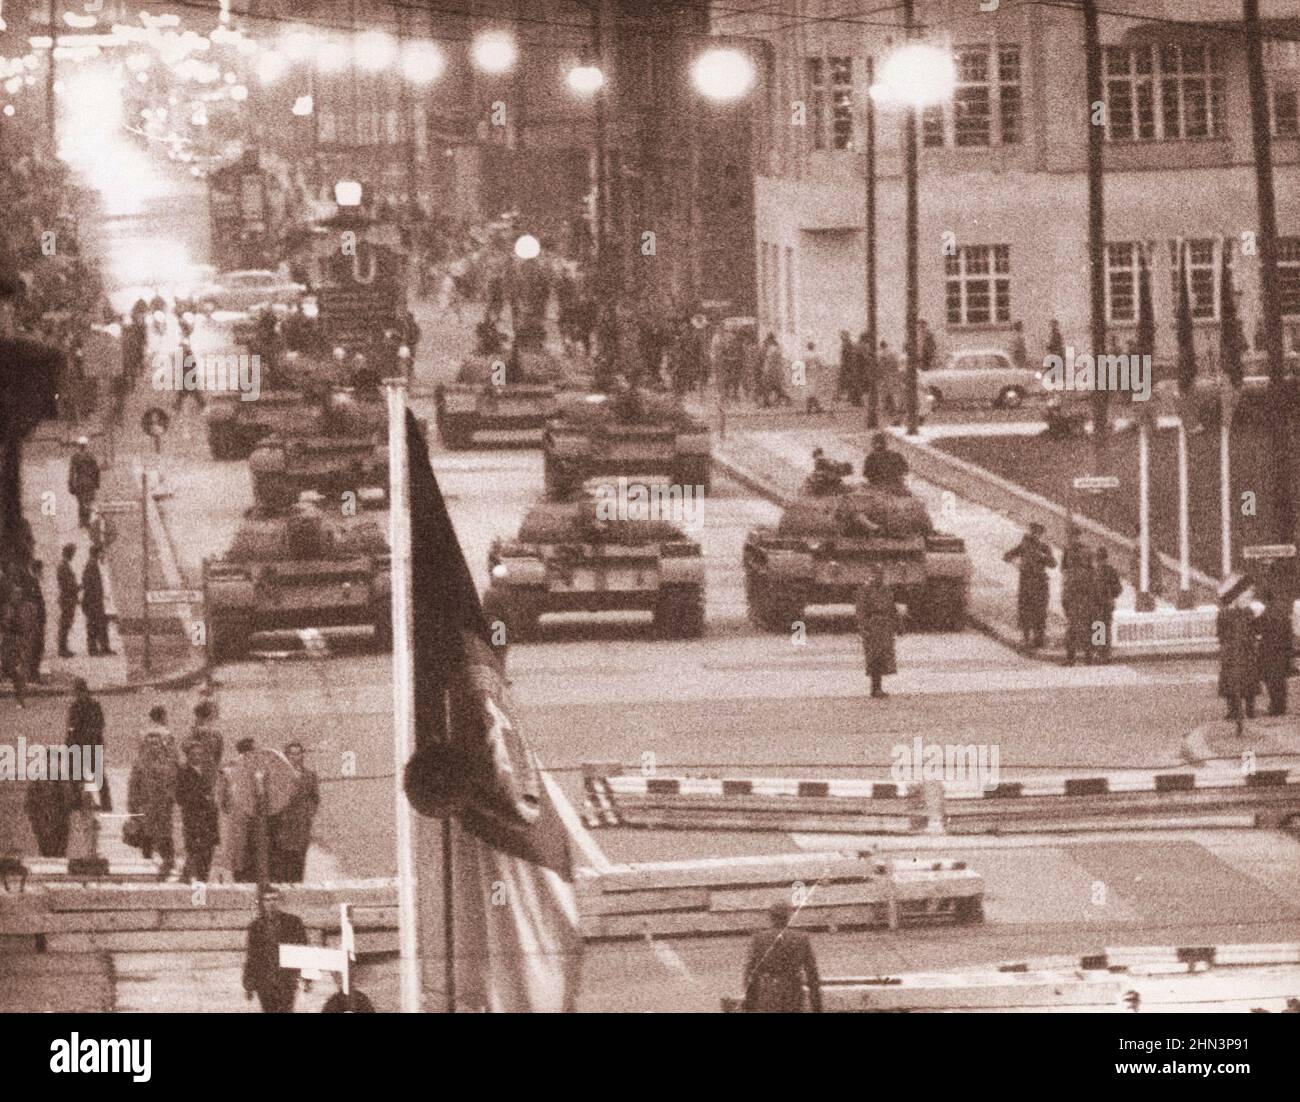 Berliner Krise von 1961: Bau der Mauer Sowjetische Panzer an der "heißen" Grenze Berlins, 27. Oktober 1961 Stockfoto